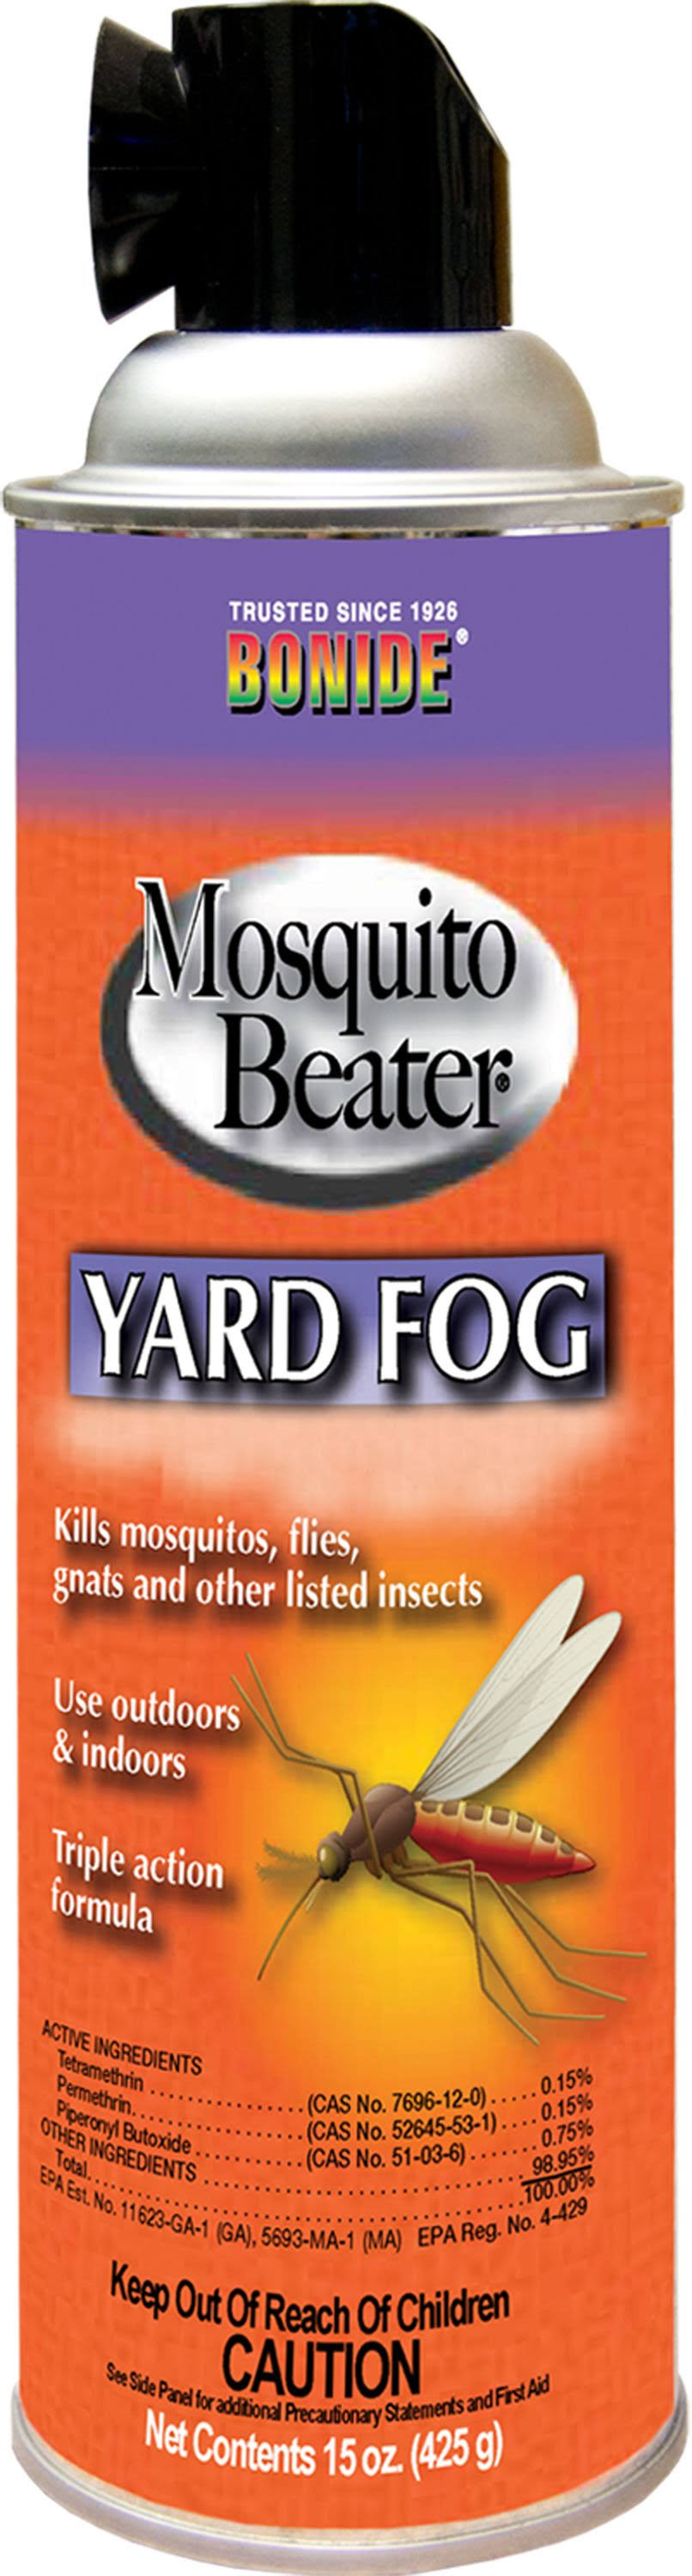 Bonide Mosquito Beater Yard Fog - 15oz